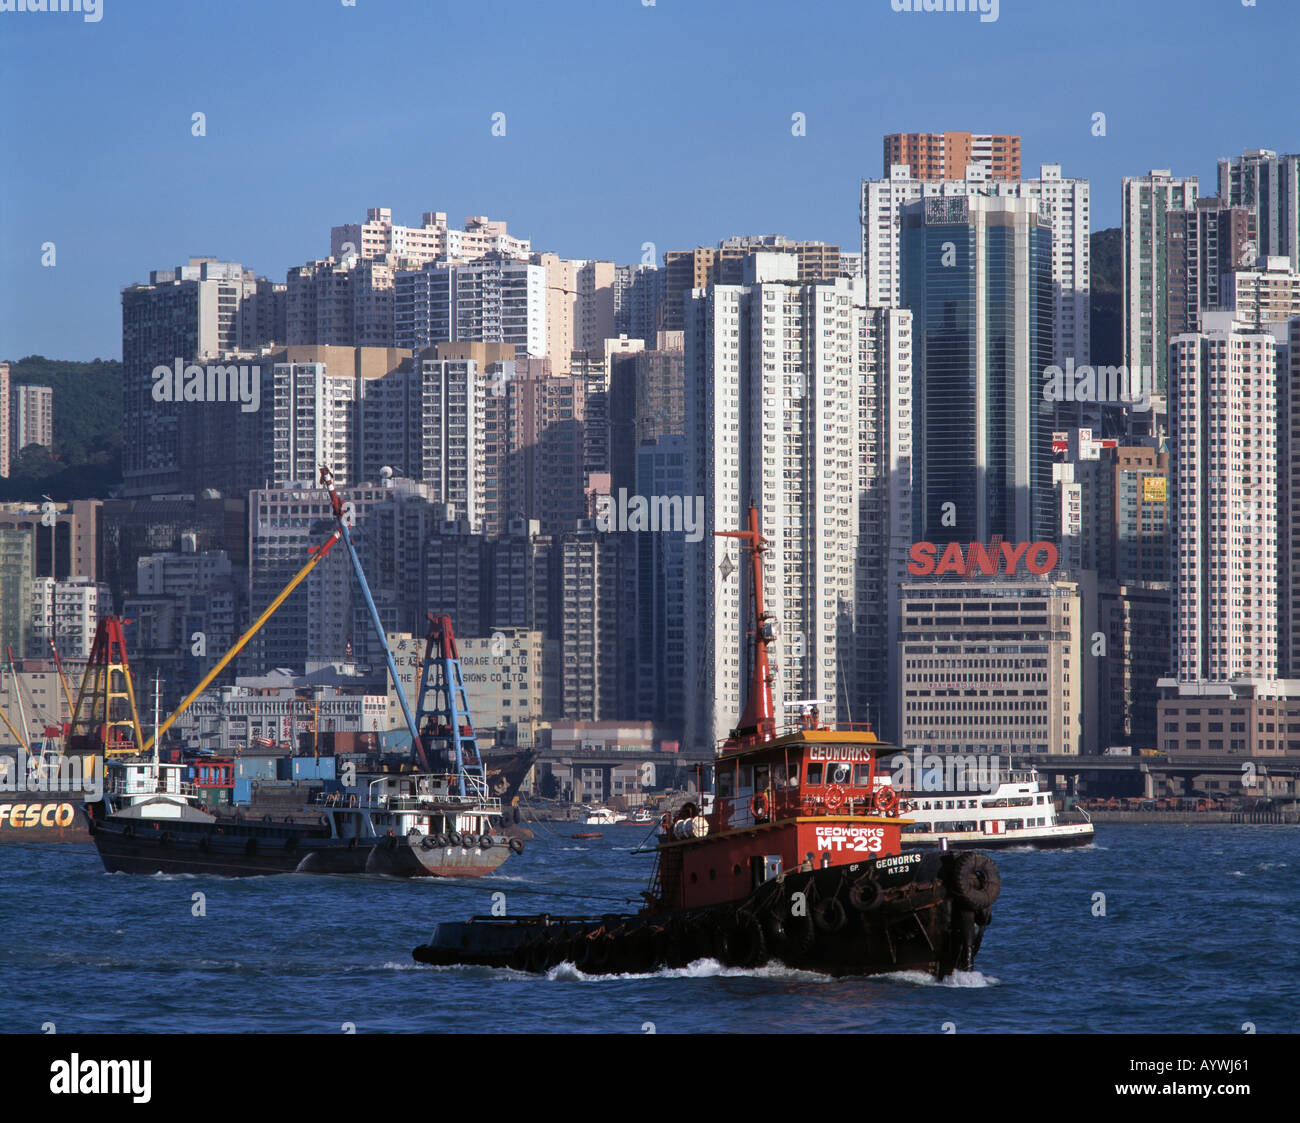 Hafen, Schiffsverkehr, Containerschiffe, Schleppboot, Wolkenkratzer-Skyline Causeway Bay, Hong Kong Insel, Hongkong Stock Photo